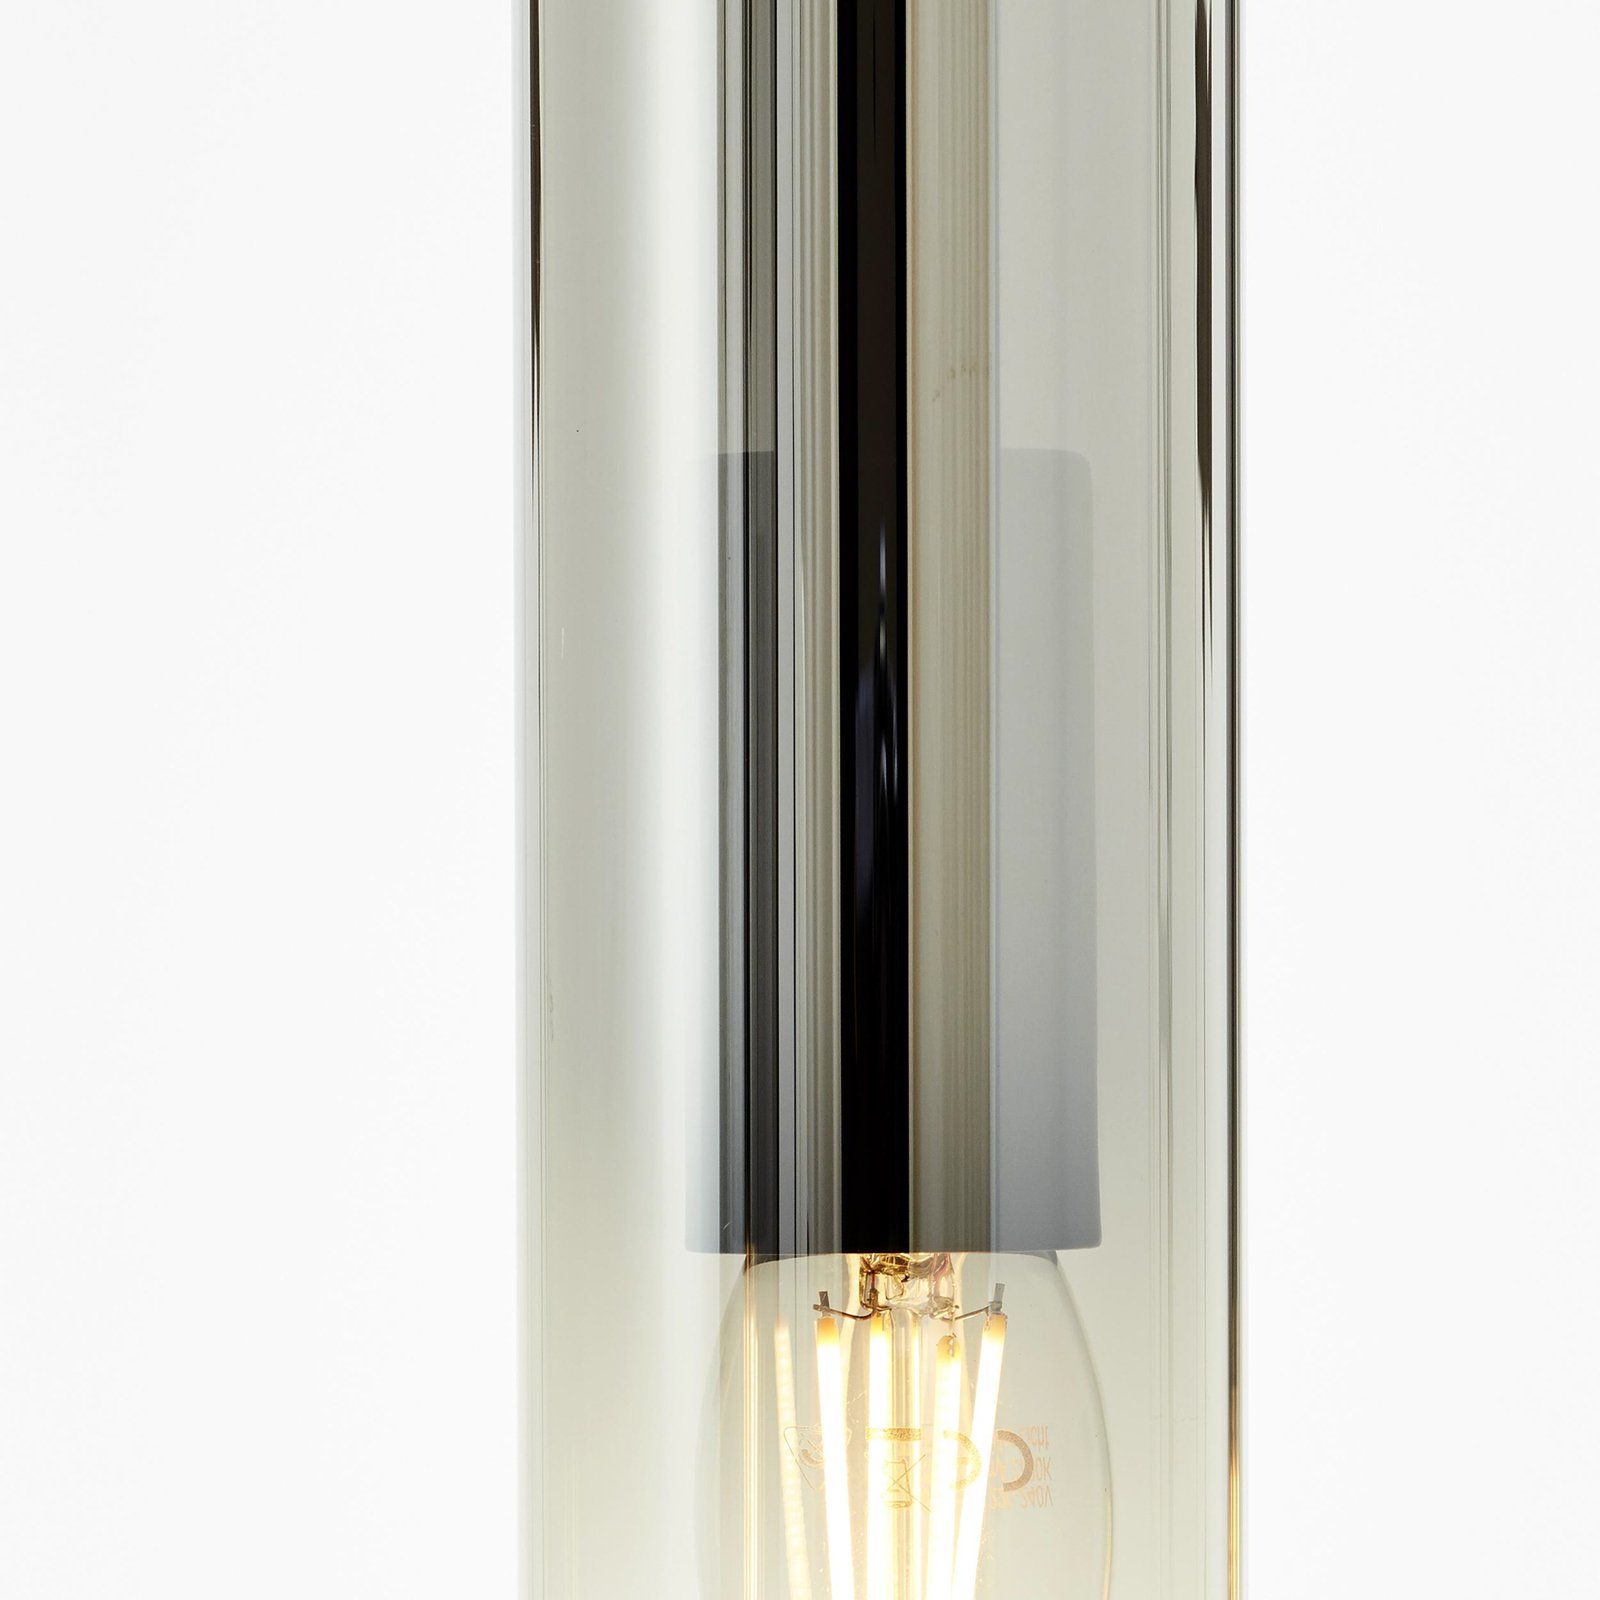 Hanglamp Glasini, lengte 95 cm, rookgrijs, 5-lamps, glas